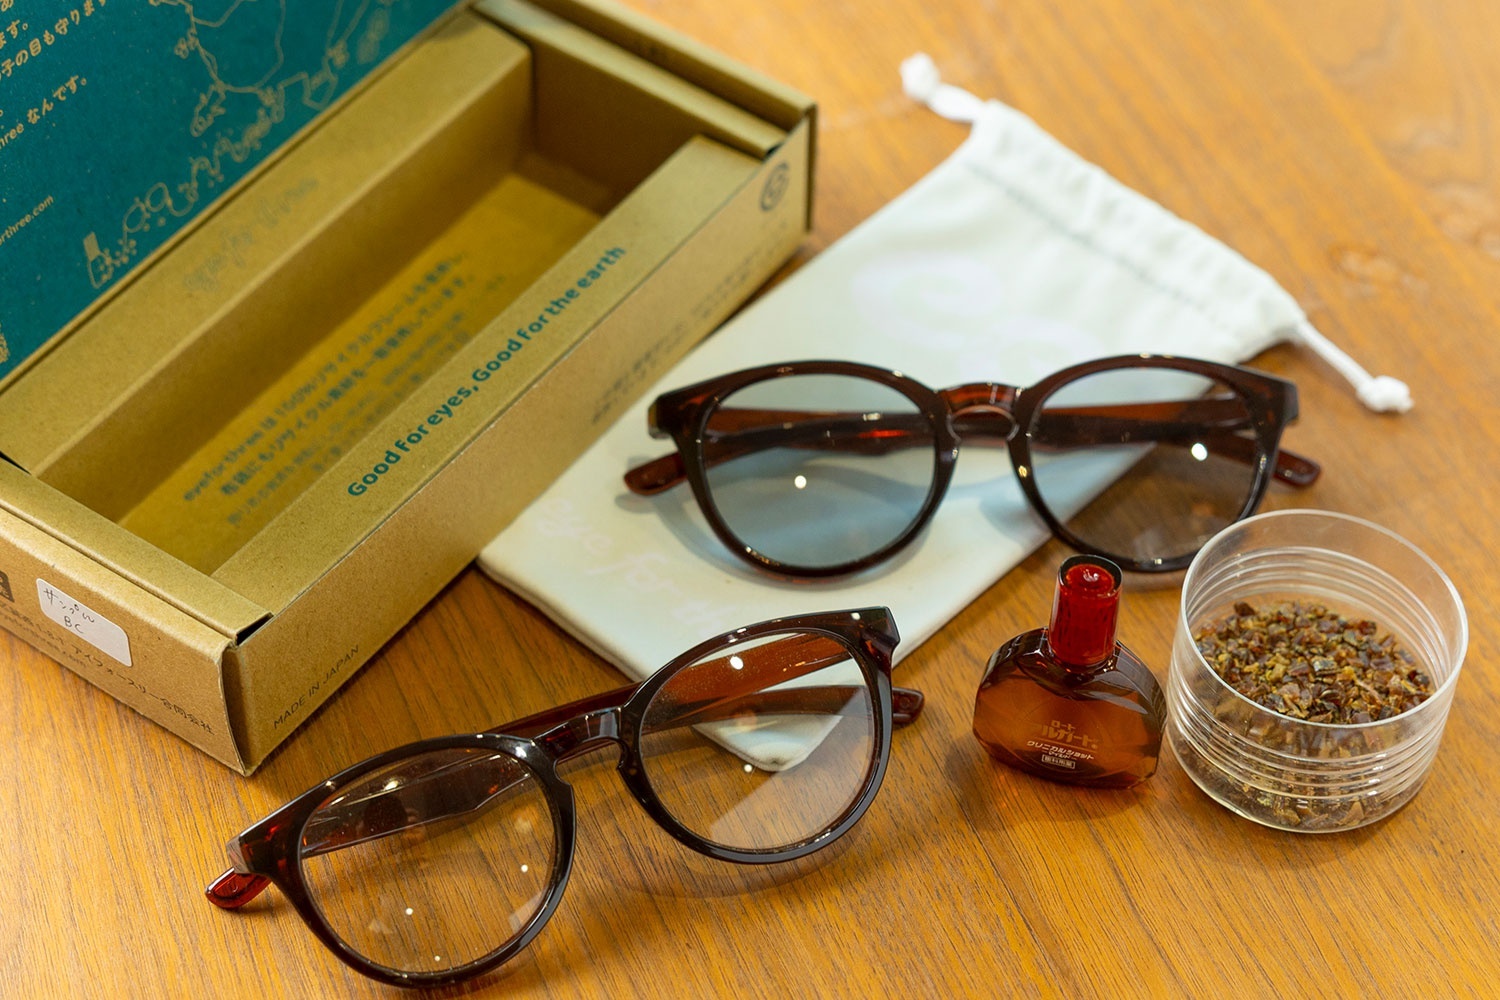 「サステナブルなサングラス」「サステナブルなブルーライトカット眼鏡」はともに1万5000円